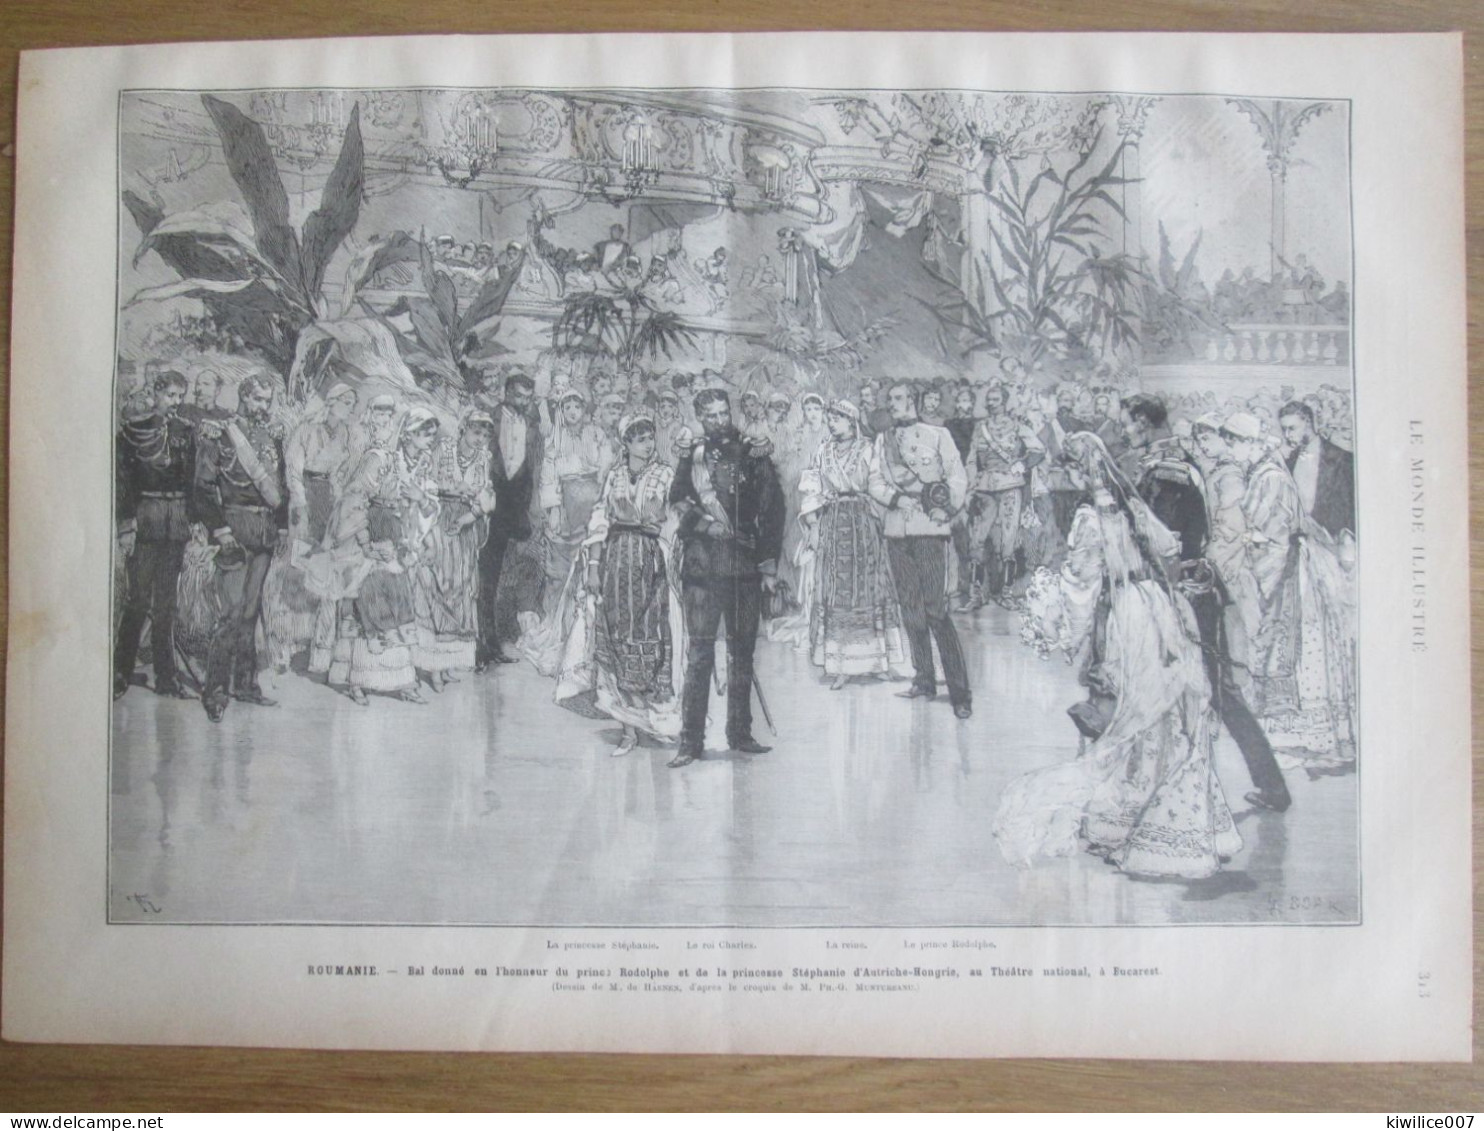 1884 ROUMANIE   Bal Donné  Prince Rodolphe  Princesse STEPHANIE   D AUTRICHE HONGRIE   BUCAREST - Stiche & Gravuren